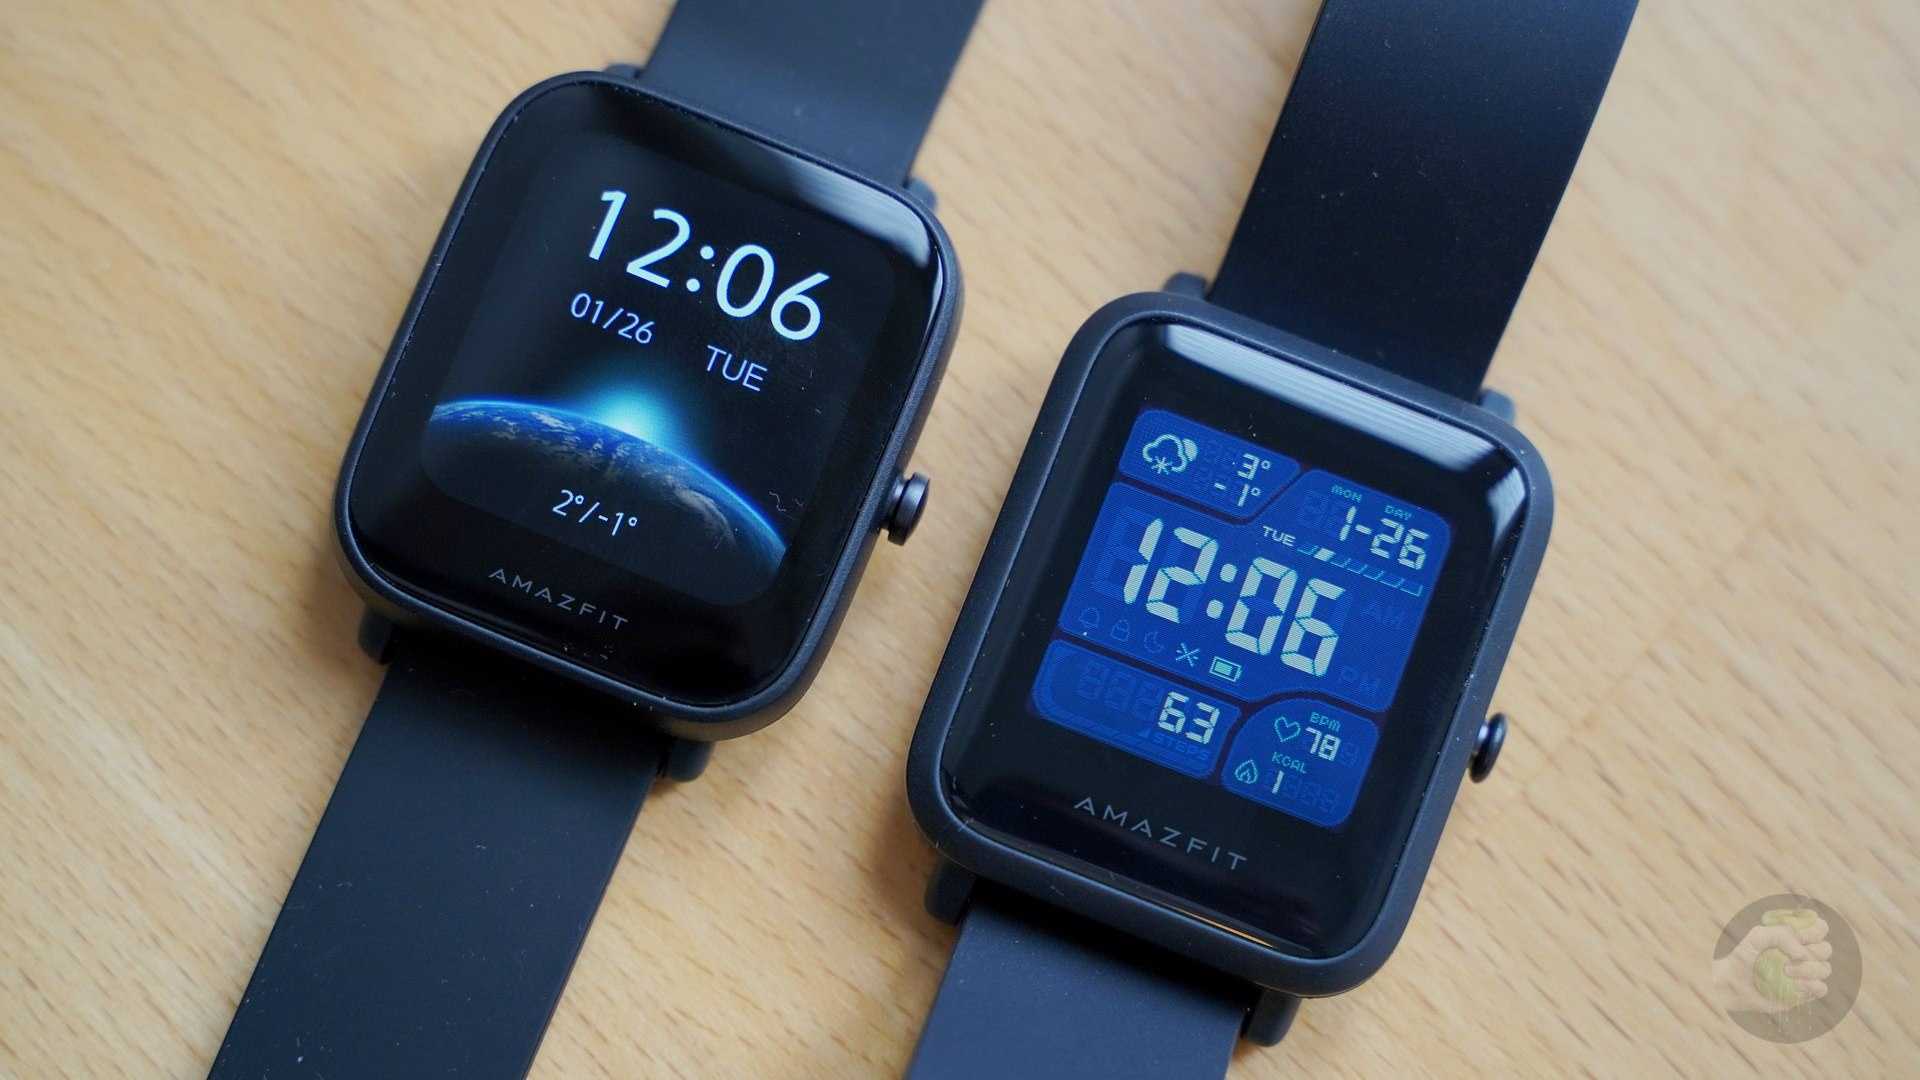 Xiaomi watch fit. Амазфит Бип u Pro. Умные часы Amazfit Pro u2. Часы Amazfit Bip 3. Часы амазфит Бип u про.